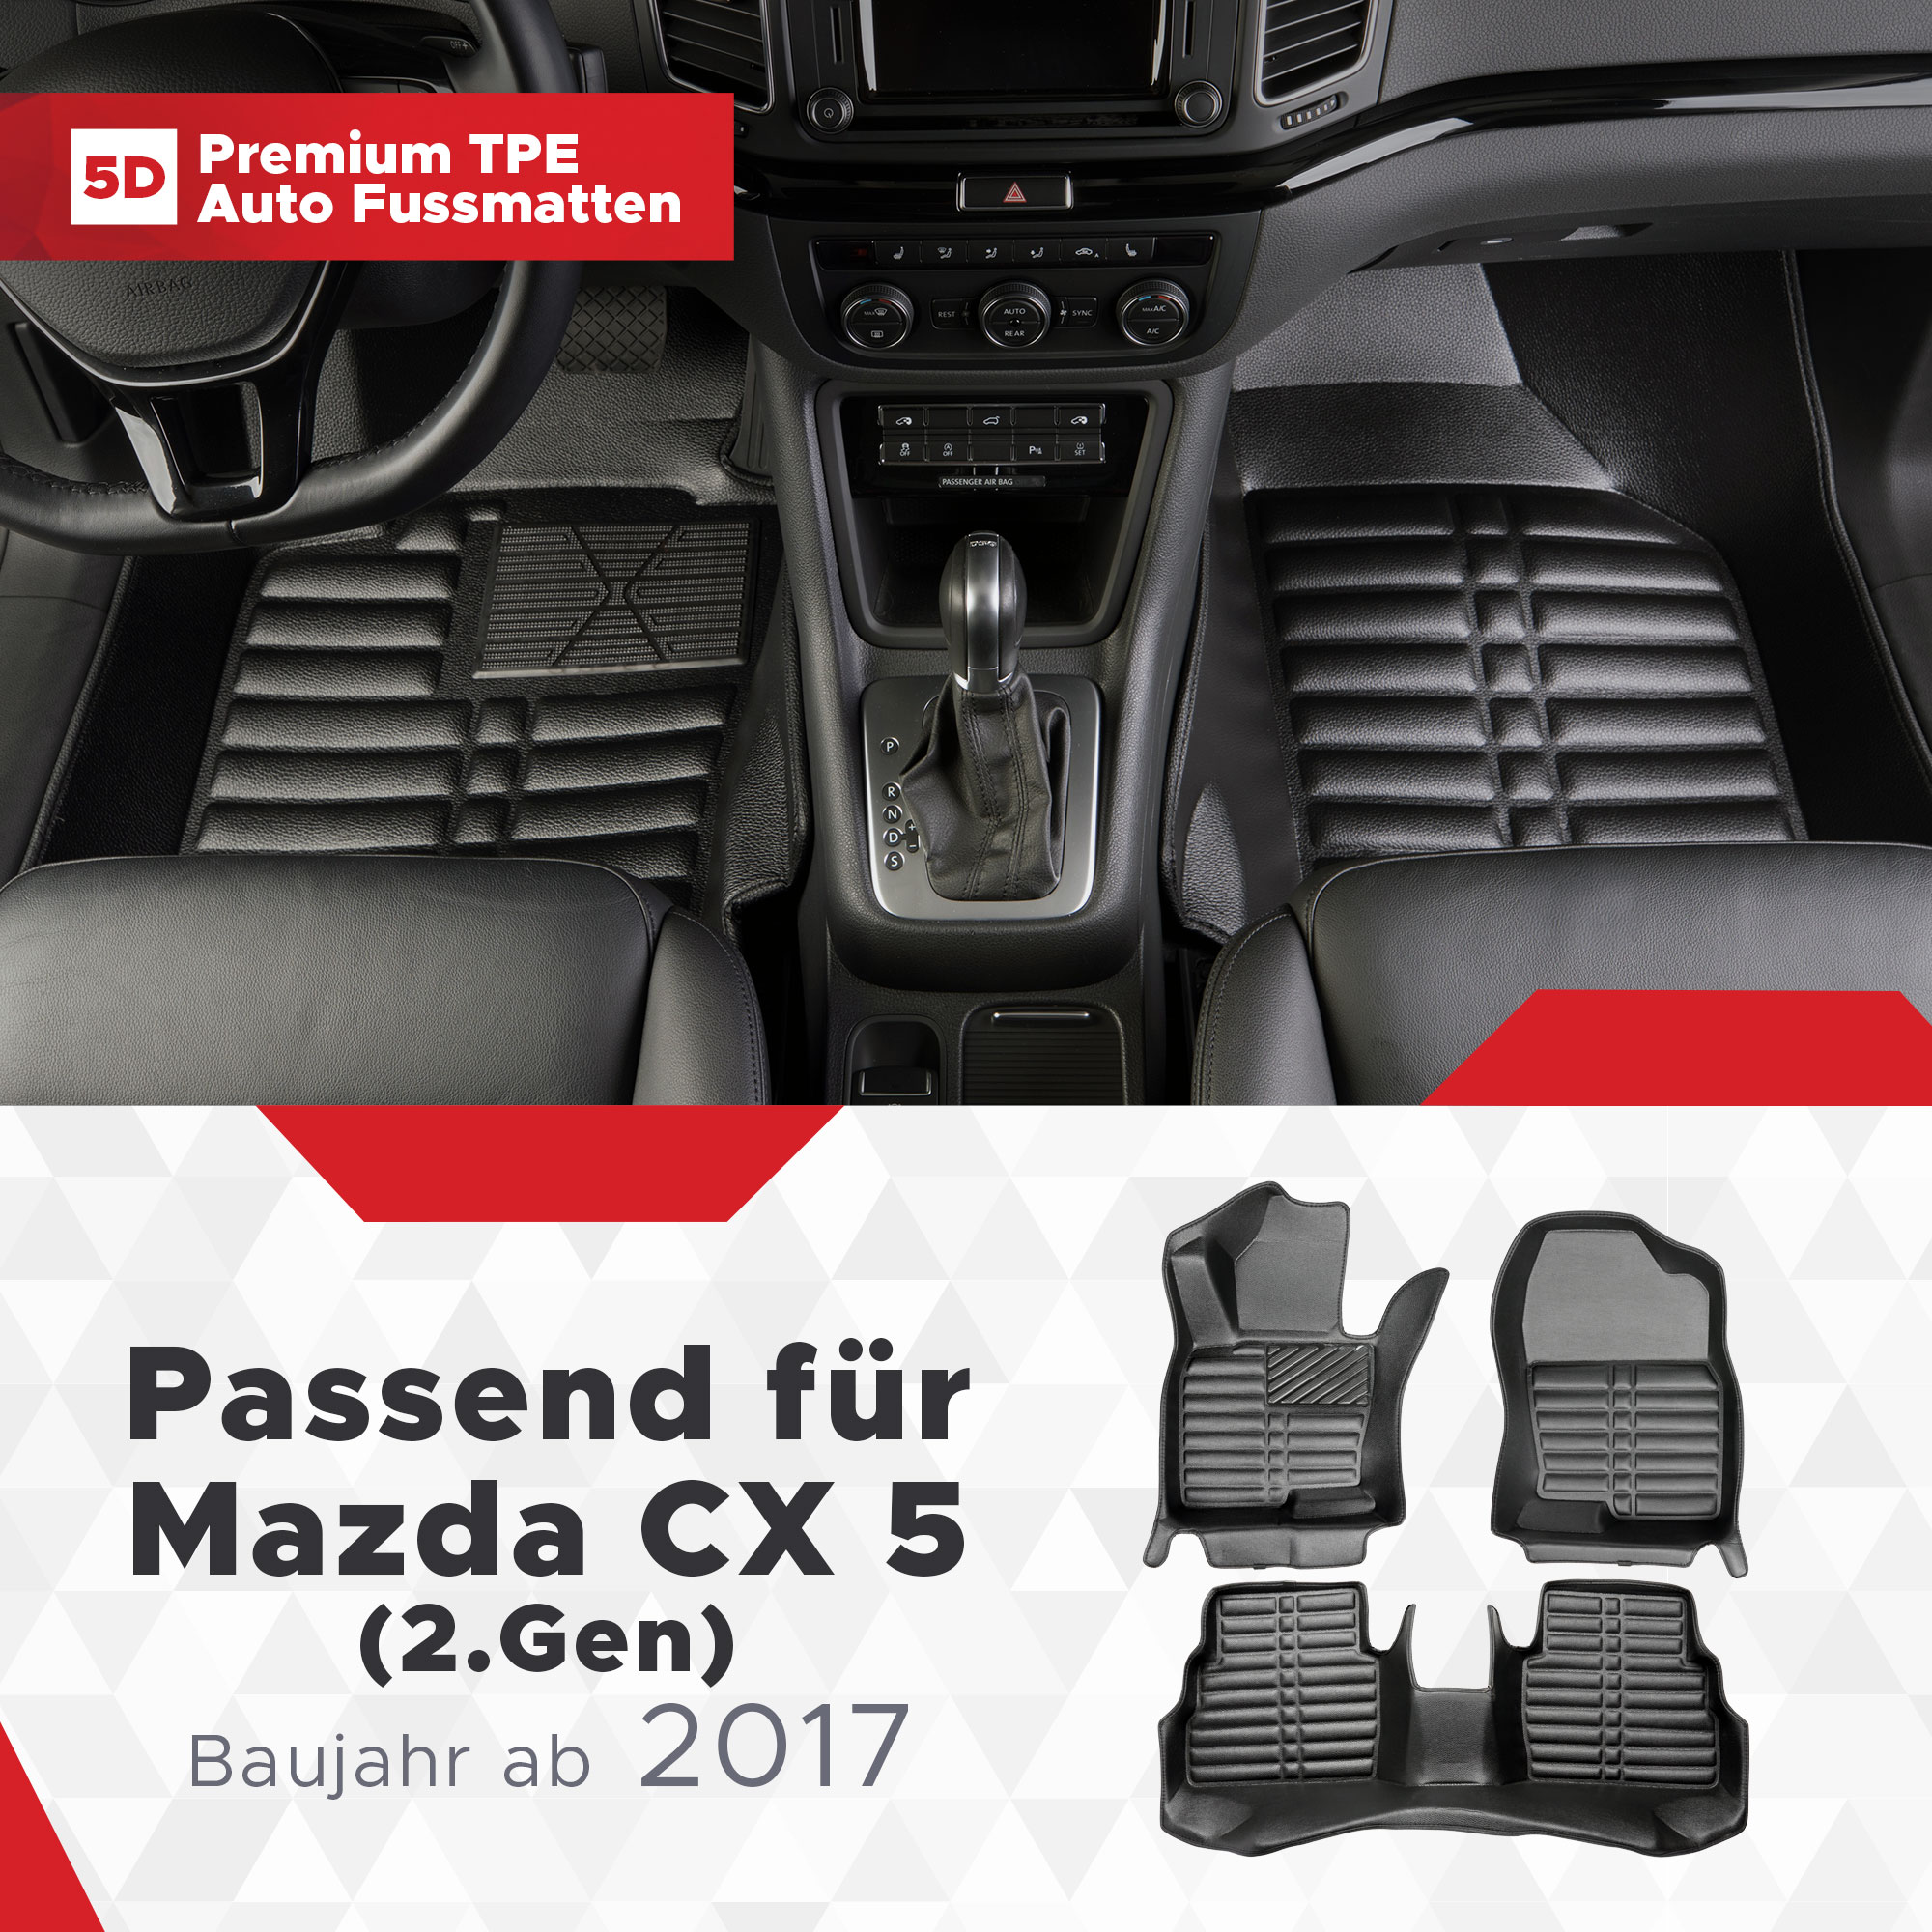 5D Mazda CX 5 (2.Gen) Fussmatten Bj ab 2017 TPE